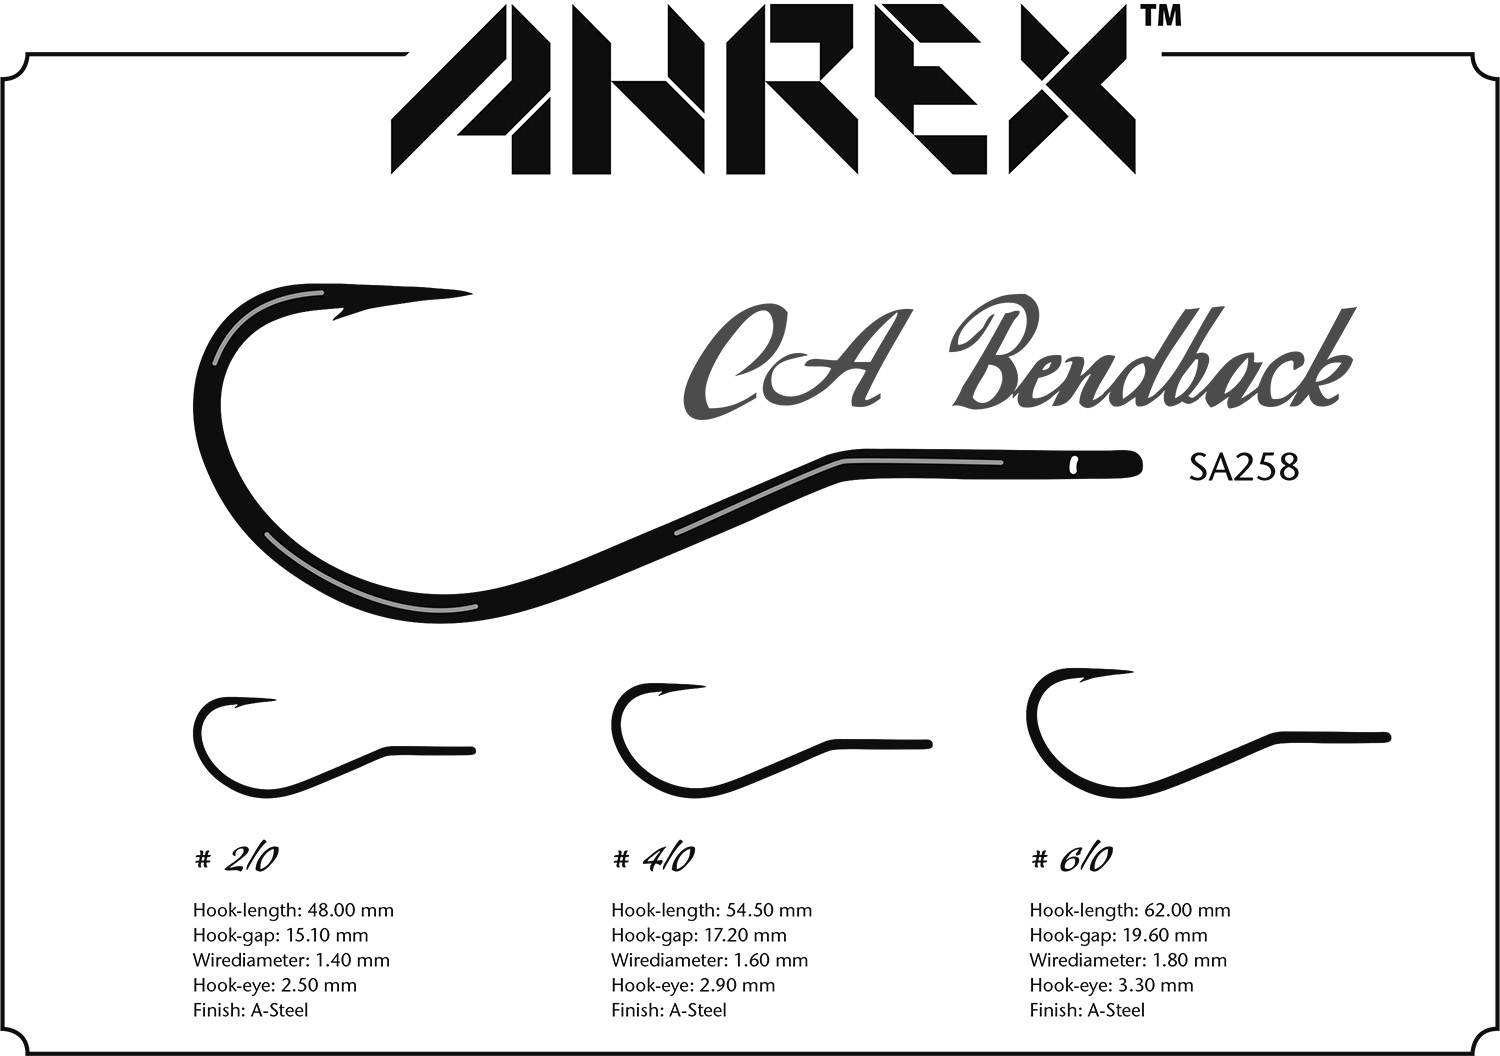 SA258 – CA BENDBACK - Ahrex Hooks